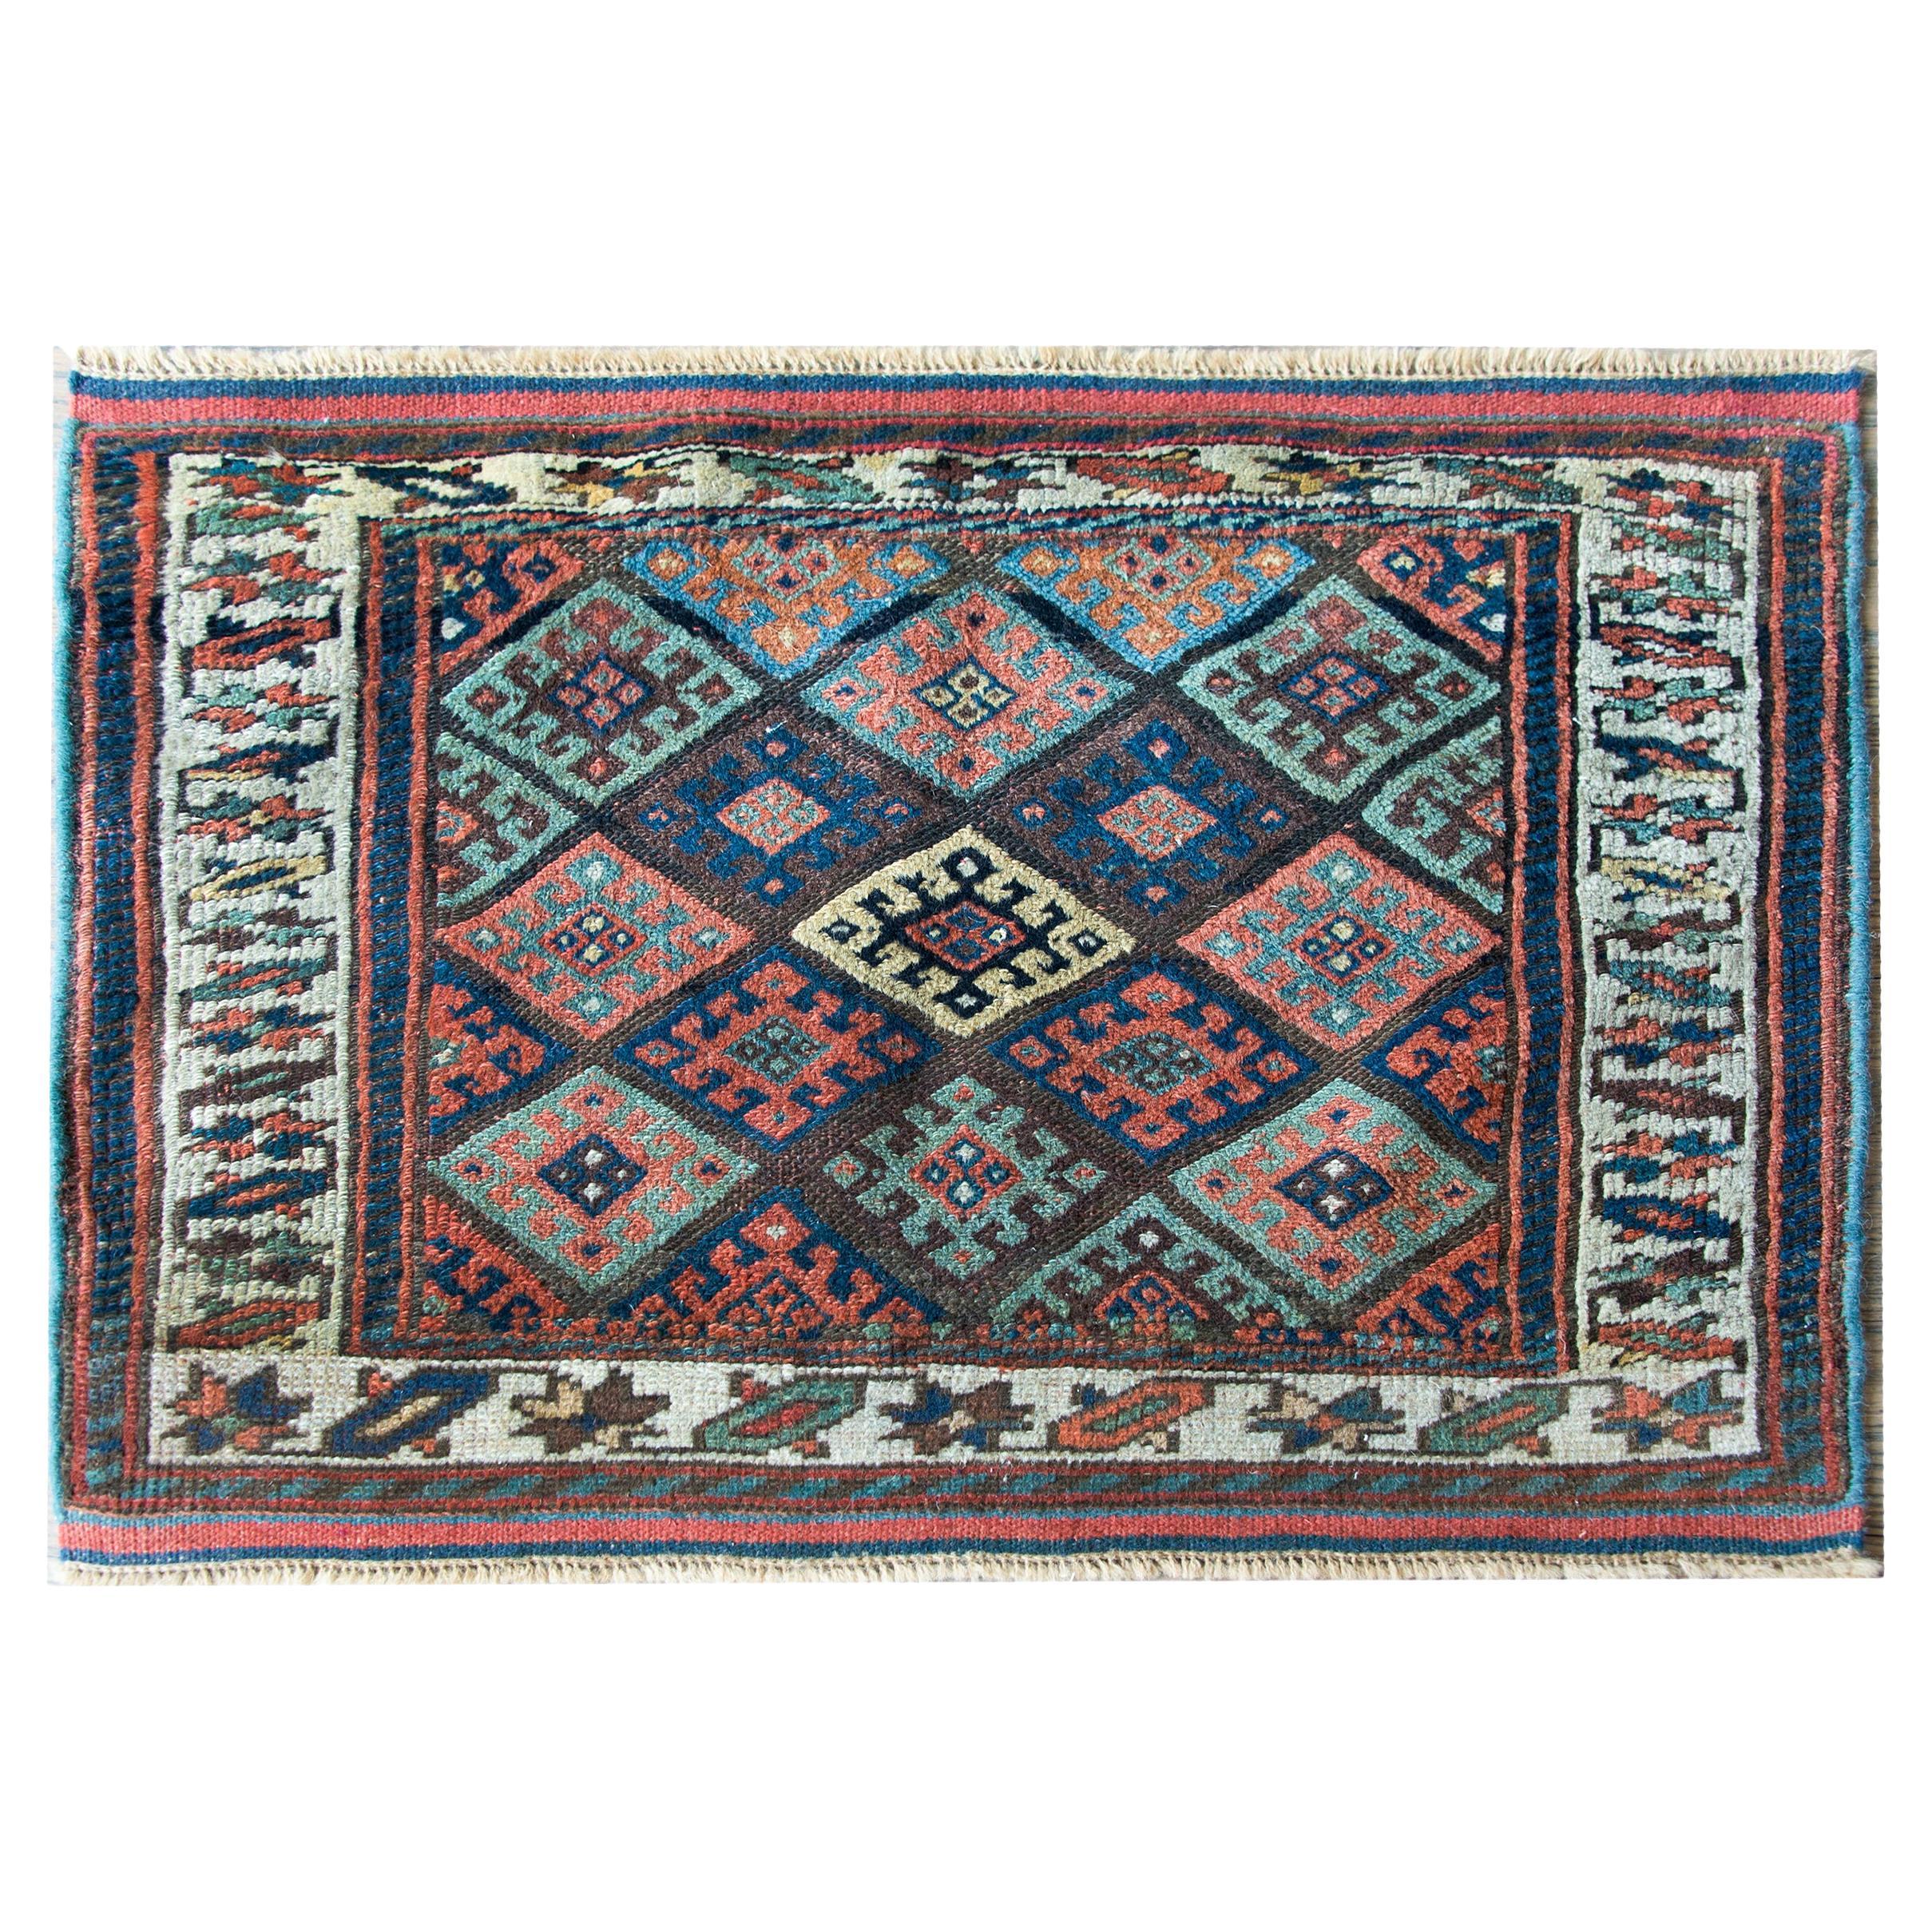 Kurdischer Jaffe-Teppich aus dem frühen 20. Jahrhundert